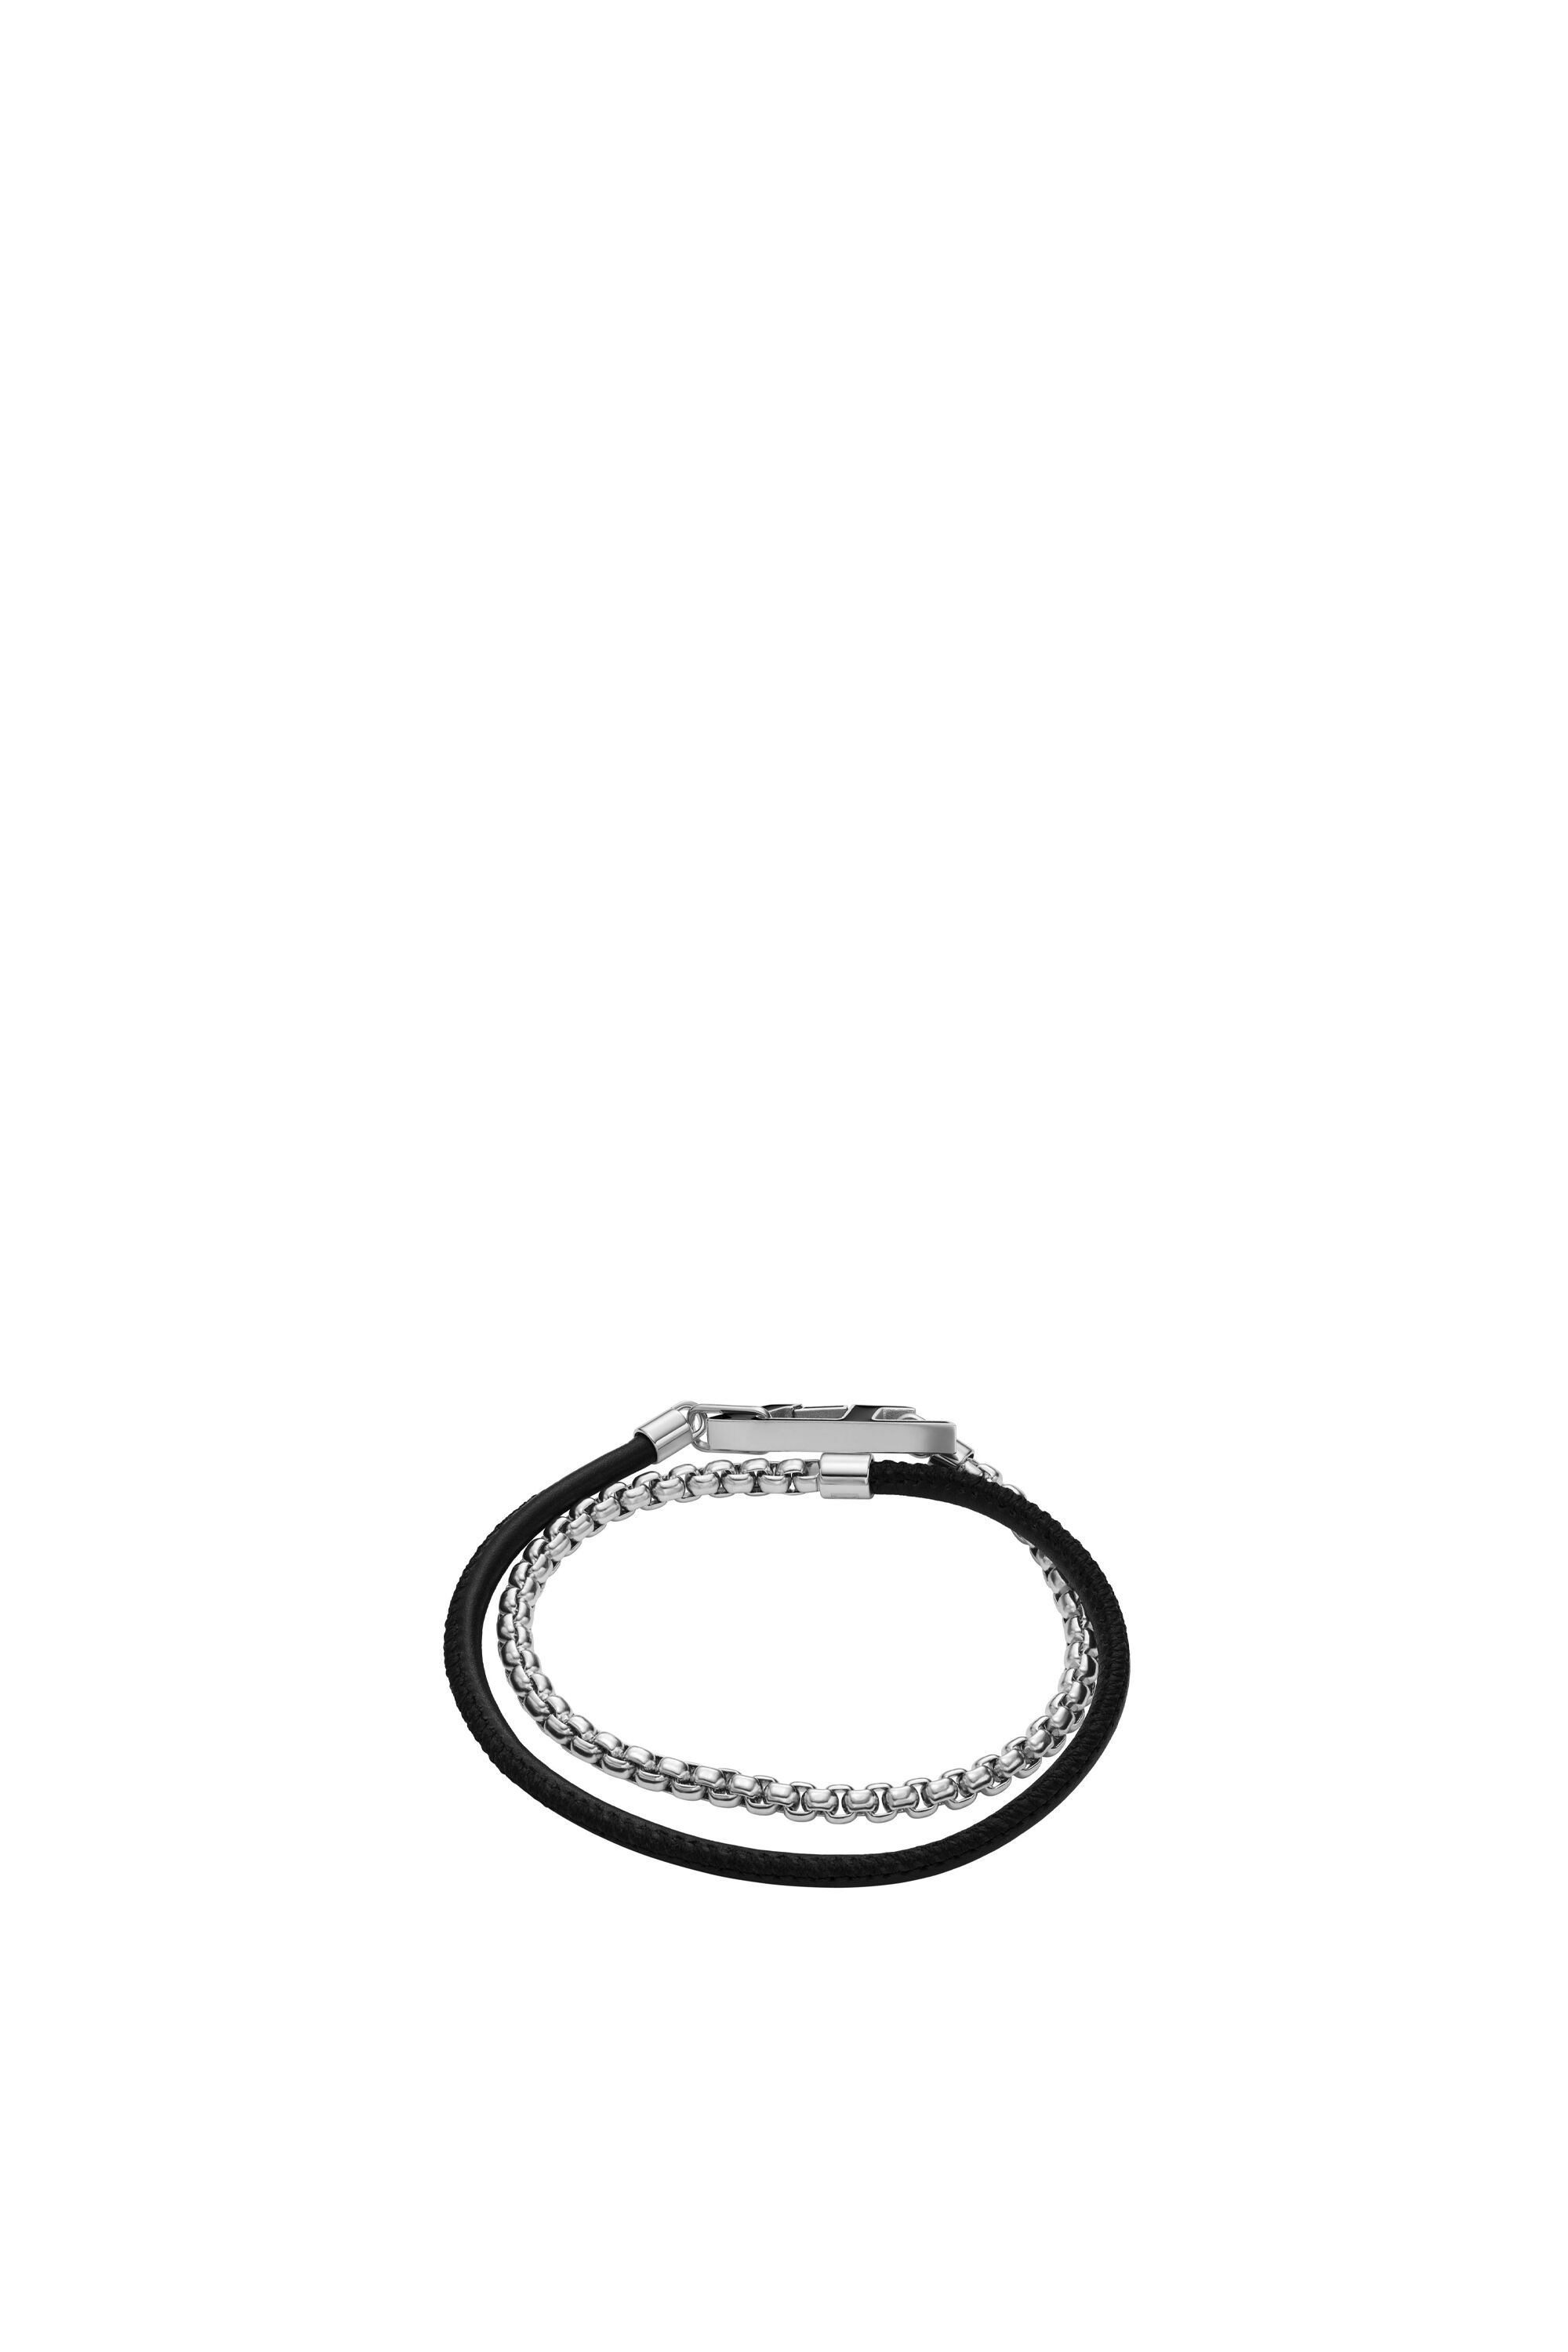 Diesel - DX1472, Mixte Bracelet chaîne en acier inoxydable in Gris argenté - Image 2